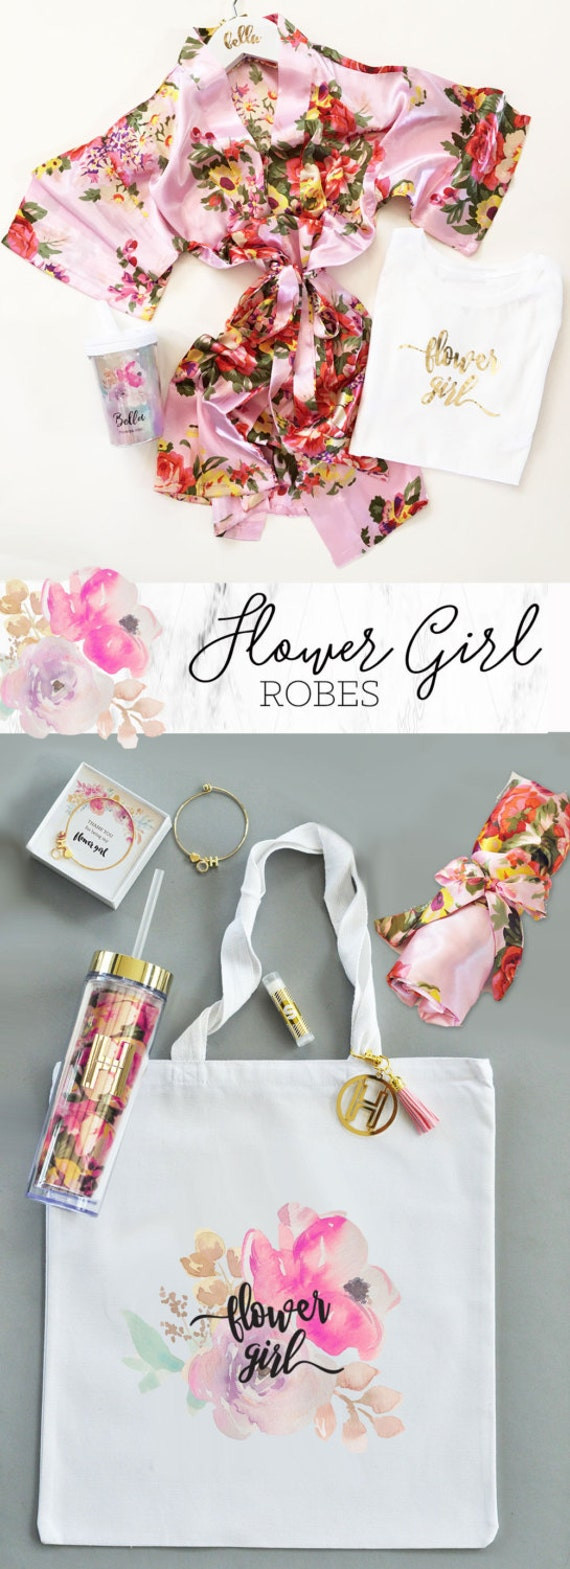 Gift Ideas For Flower Girls
 Flower Girl Robes Flower Girl Gift Ideas Girls Robe by